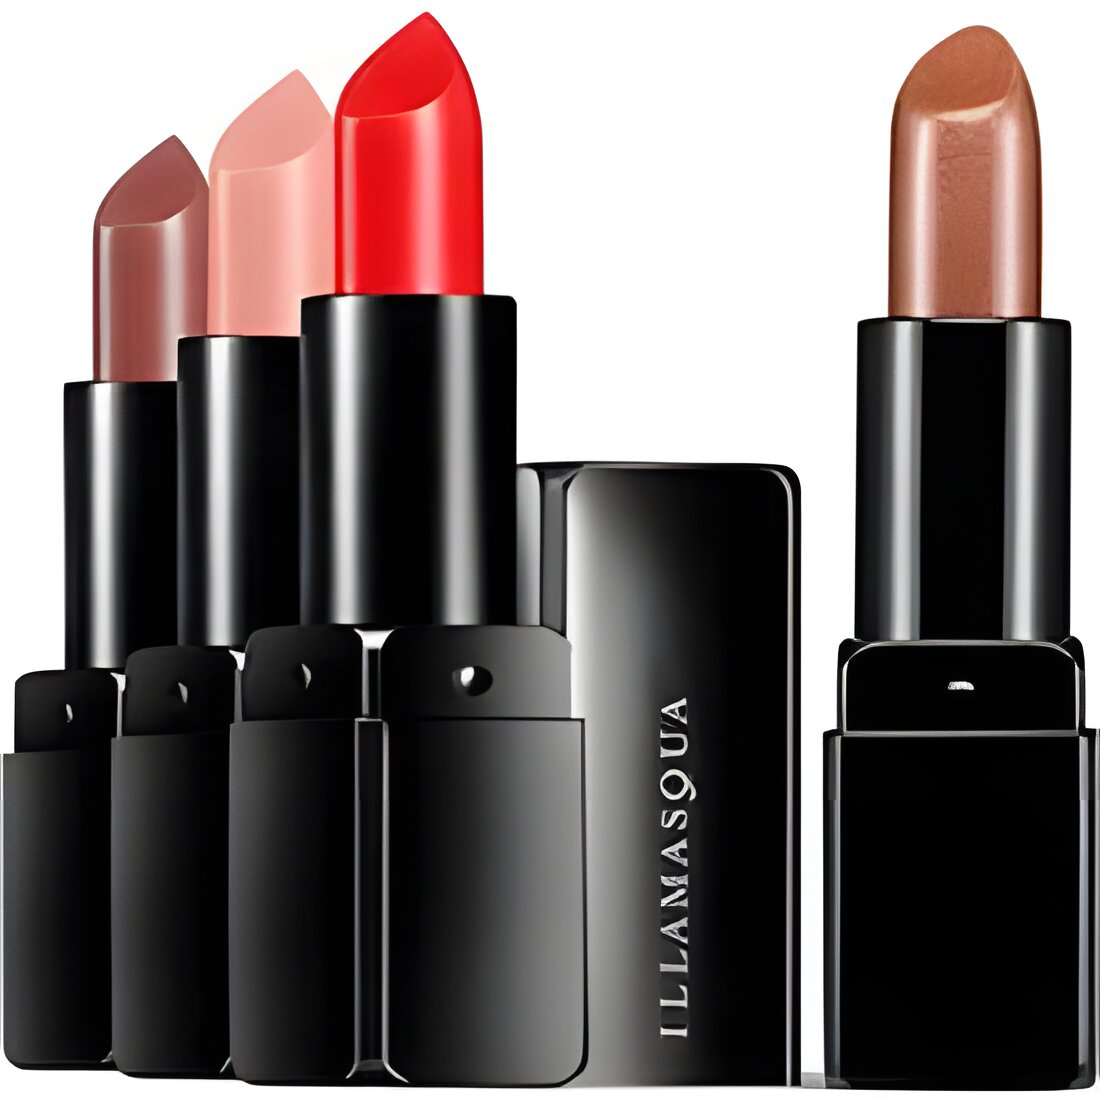 Free Illamasqua Lipstick